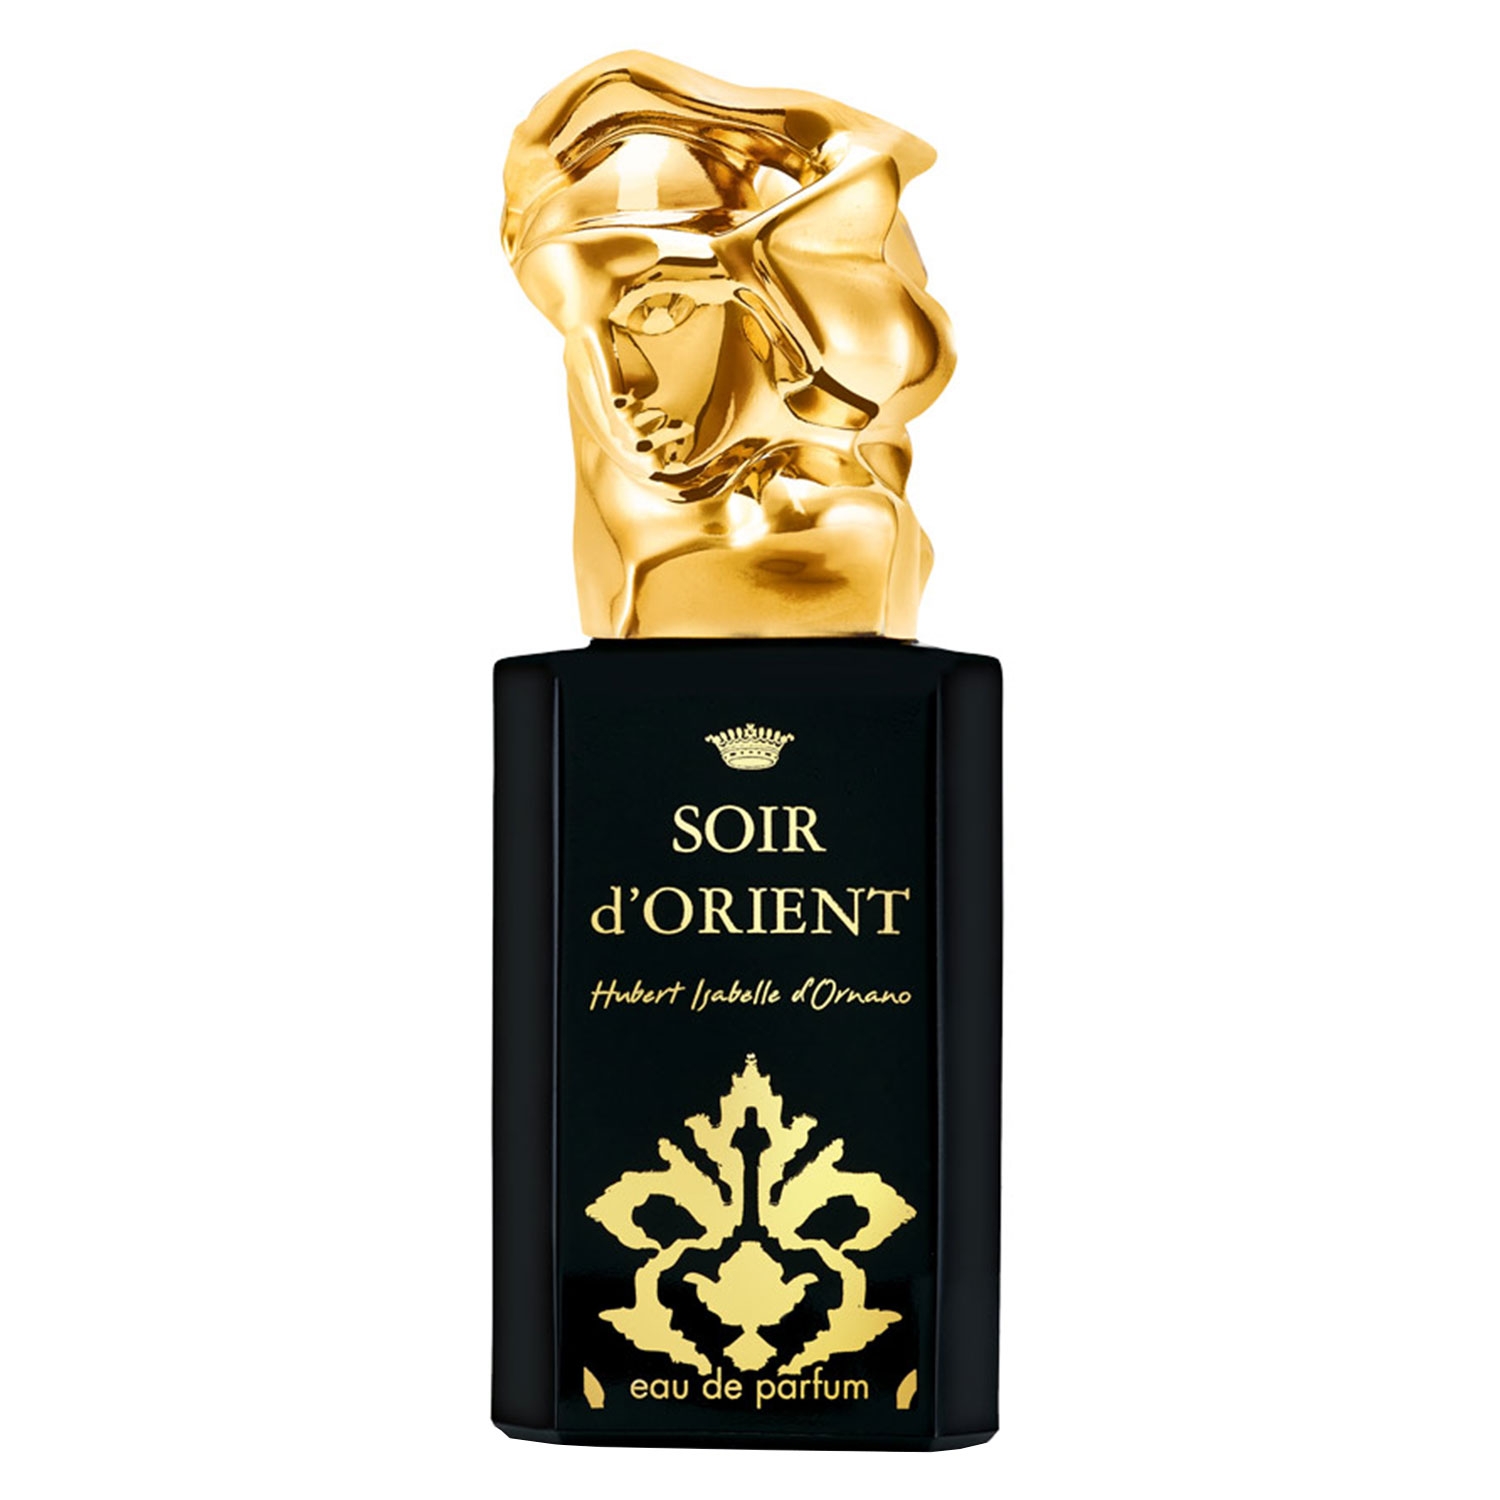 Product image from Sisley Fragrance - Soir d'Orient Eau de Parfum